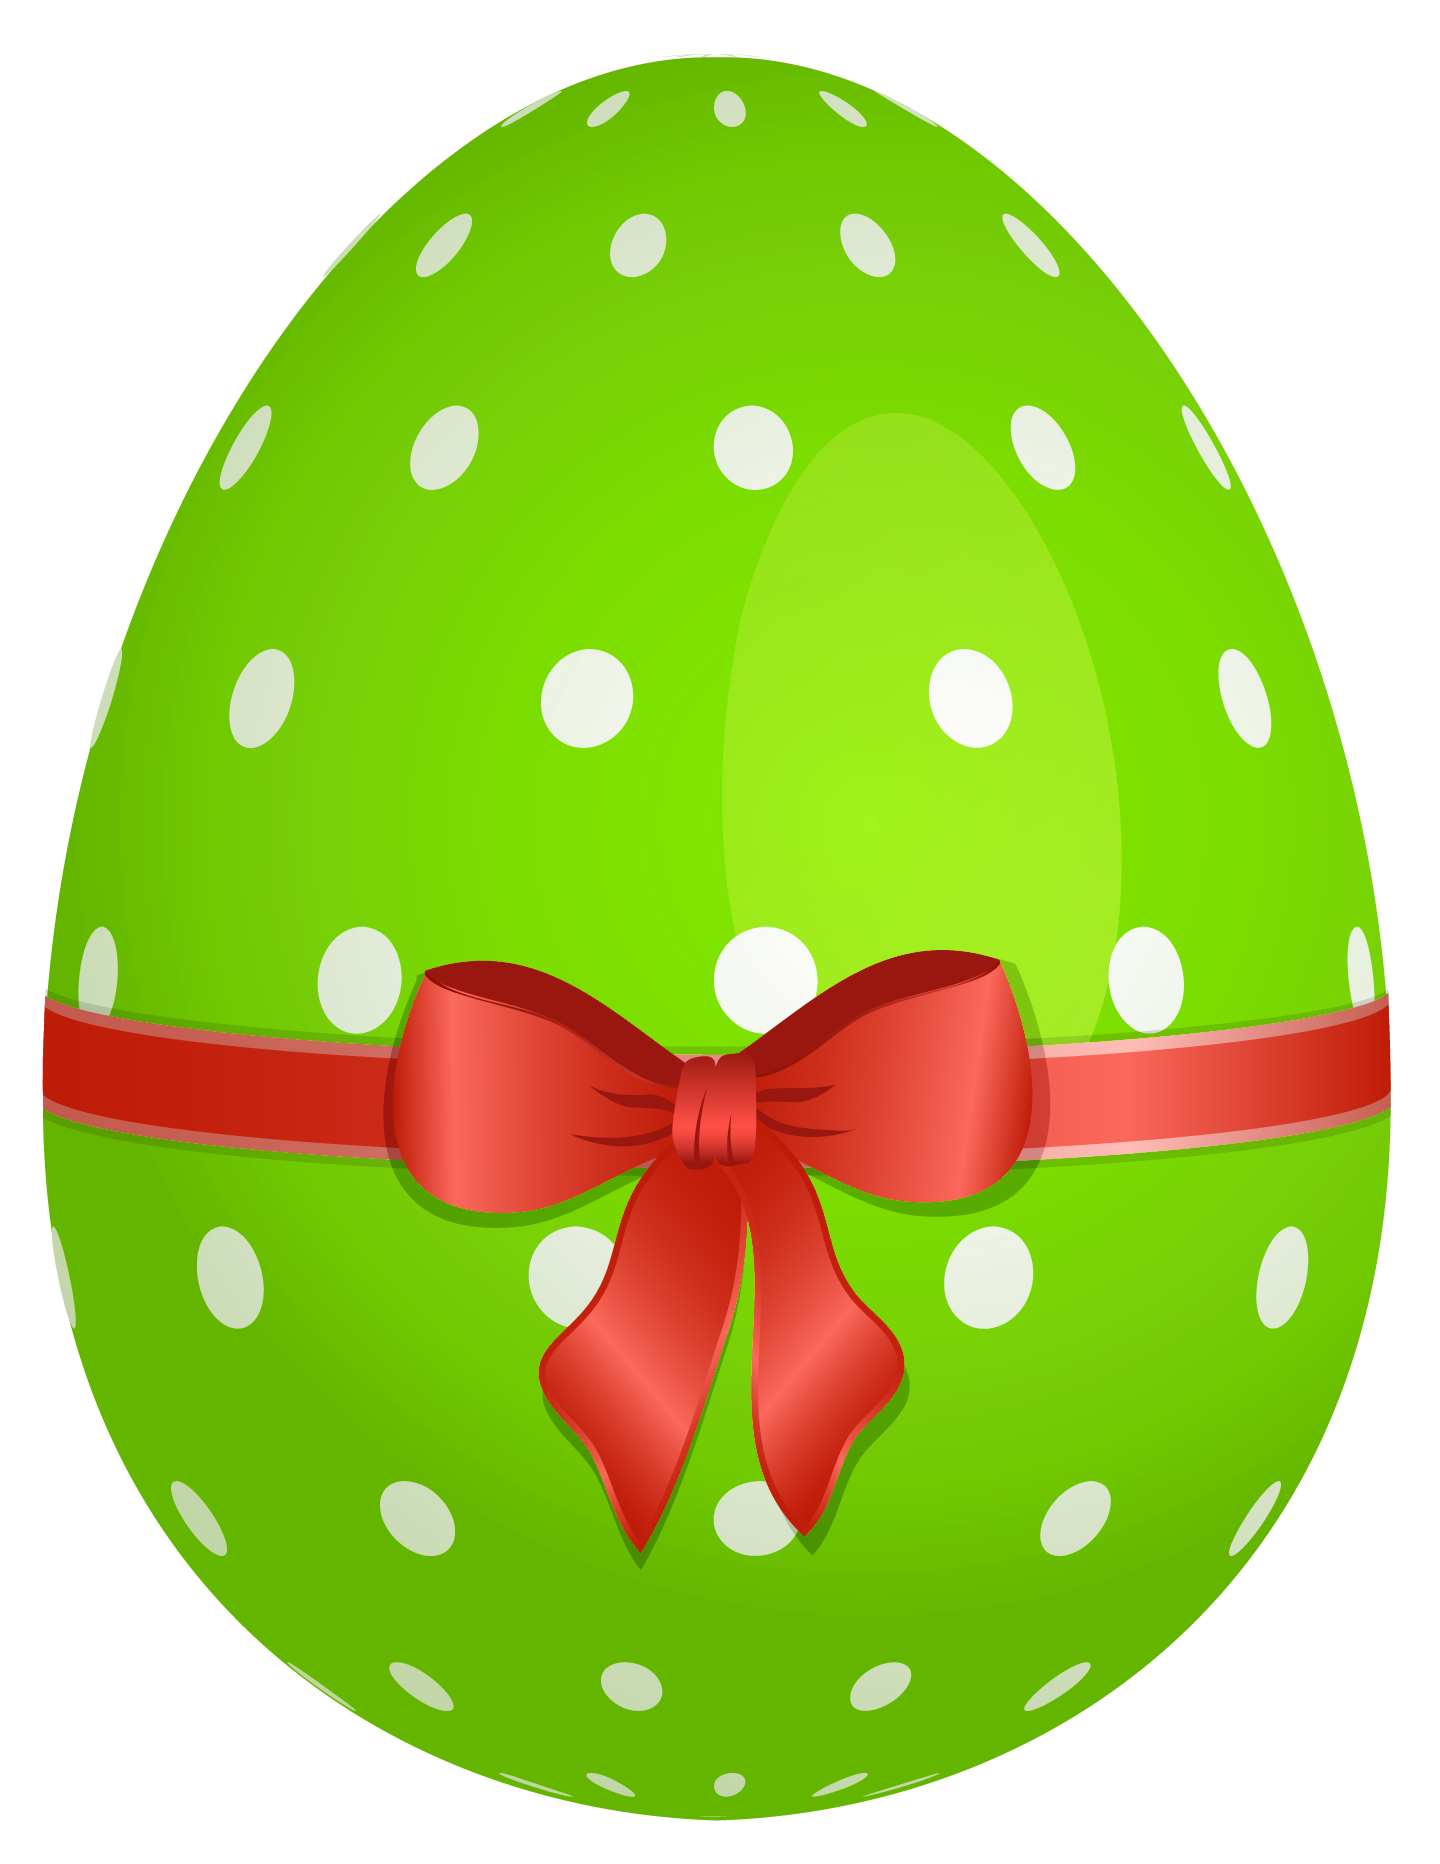 Easter egg png illustration, transparent